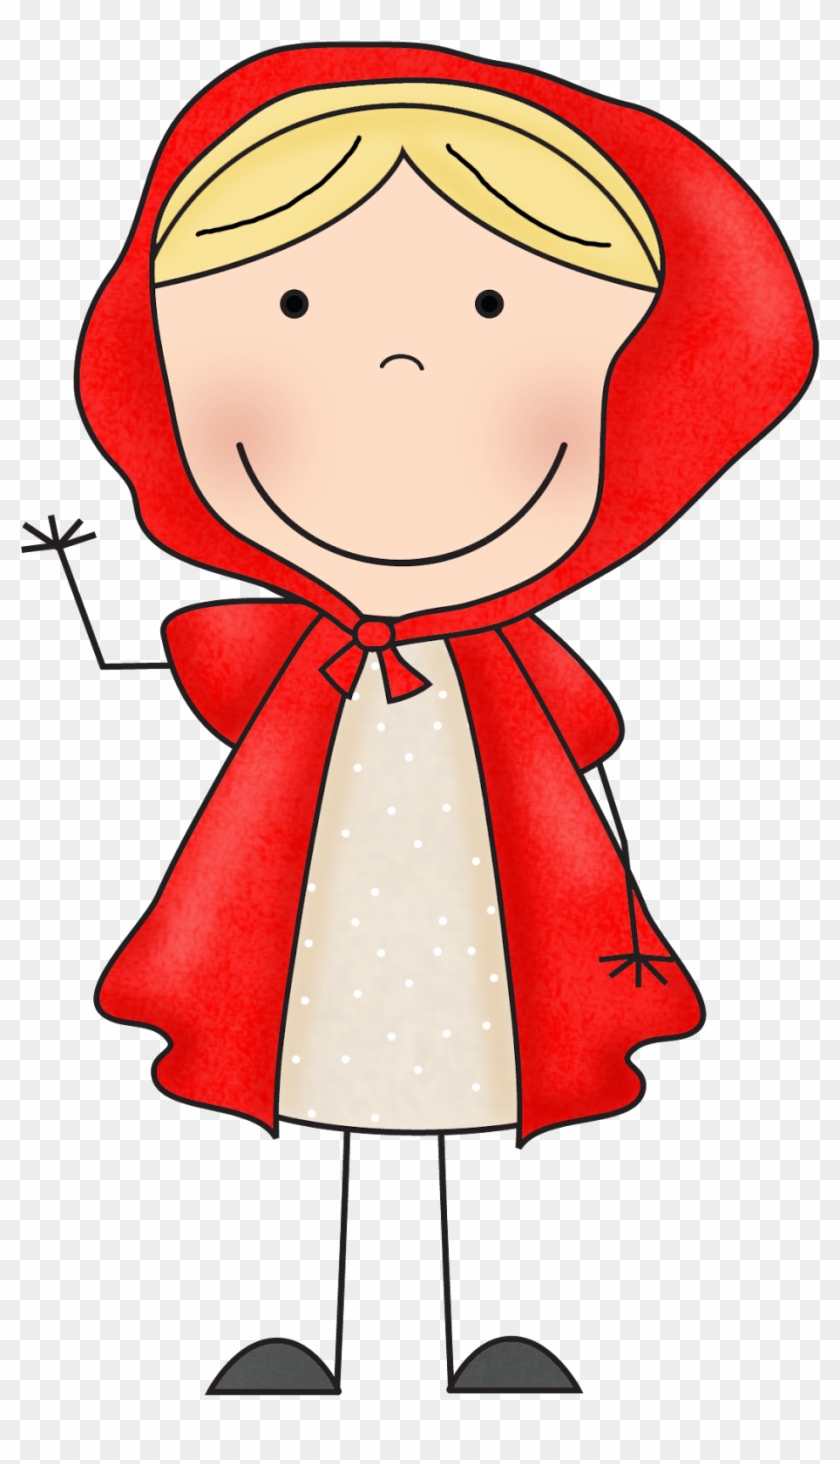 Little Red Riding Hood Clip Art - Red Riding Hood Clip Art #178018